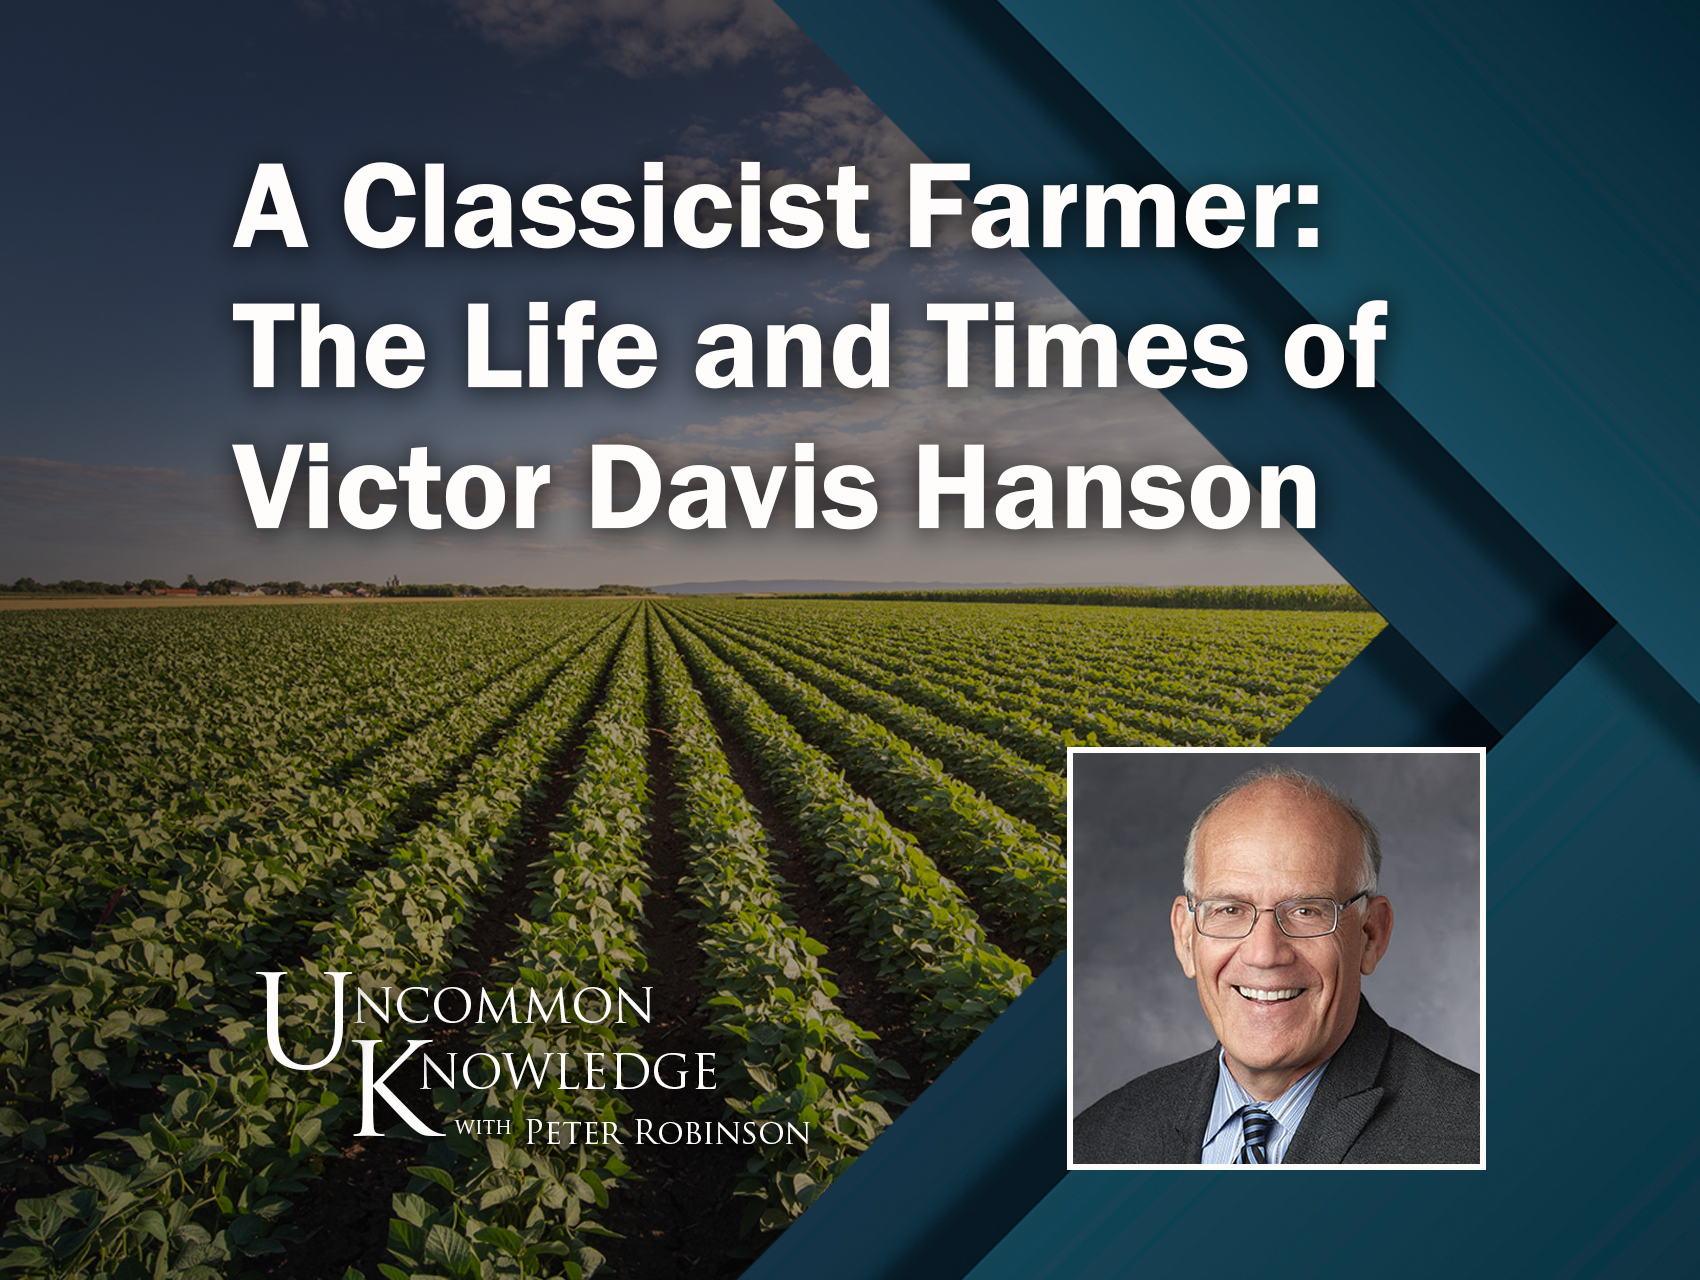 David Price - farmer - The Price Family Farm